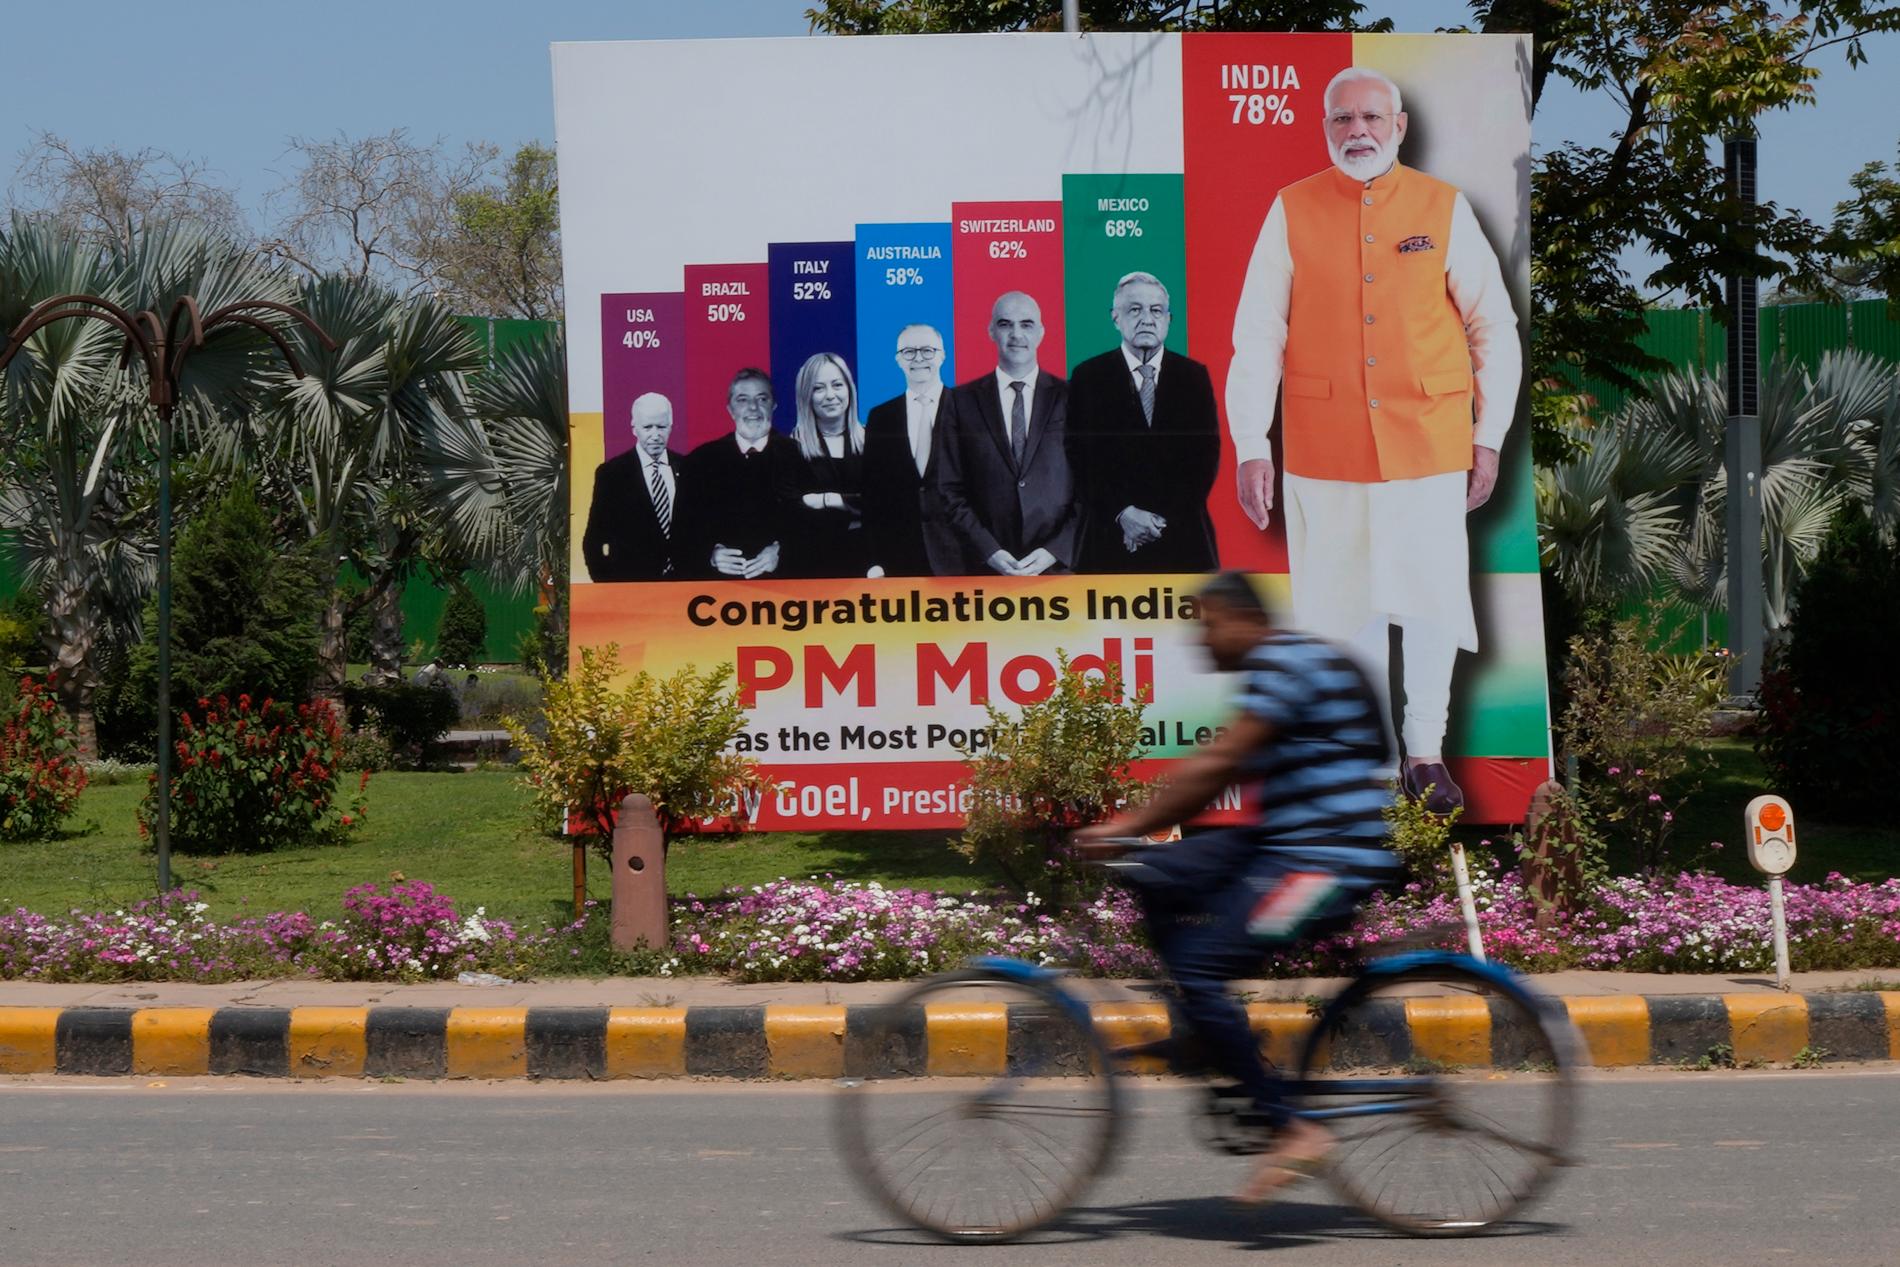 Il più popolare: un poster a Nuova Delhi afferma che Narendra Modi è il più popolare tra una serie di leader mondiali con un indice di gradimento del 78%.  In fondo c'è Joe Biden con il 40%.